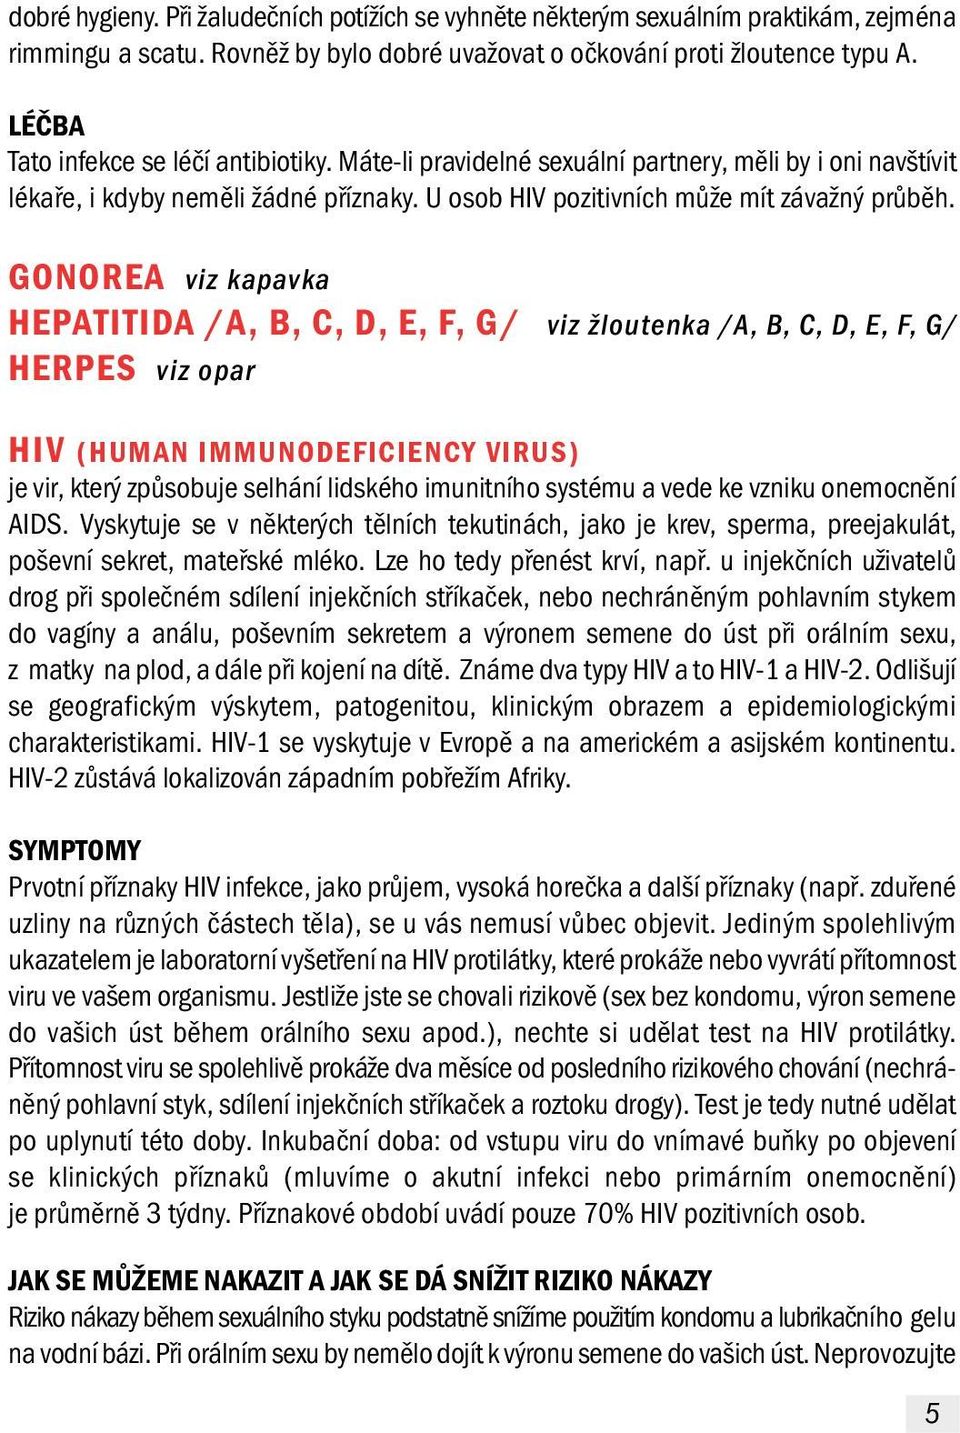 GONOREA viz kapavka HEPATITIDA /A, B, C, D, E, F, G/ viz žloutenka /A, B, C, D, E, F, G/ HERPES viz opar HIV (HUMAN IMMUNODEFICIENCY VIRUS) je vir, který způsobuje selhání lidského imunitního systému